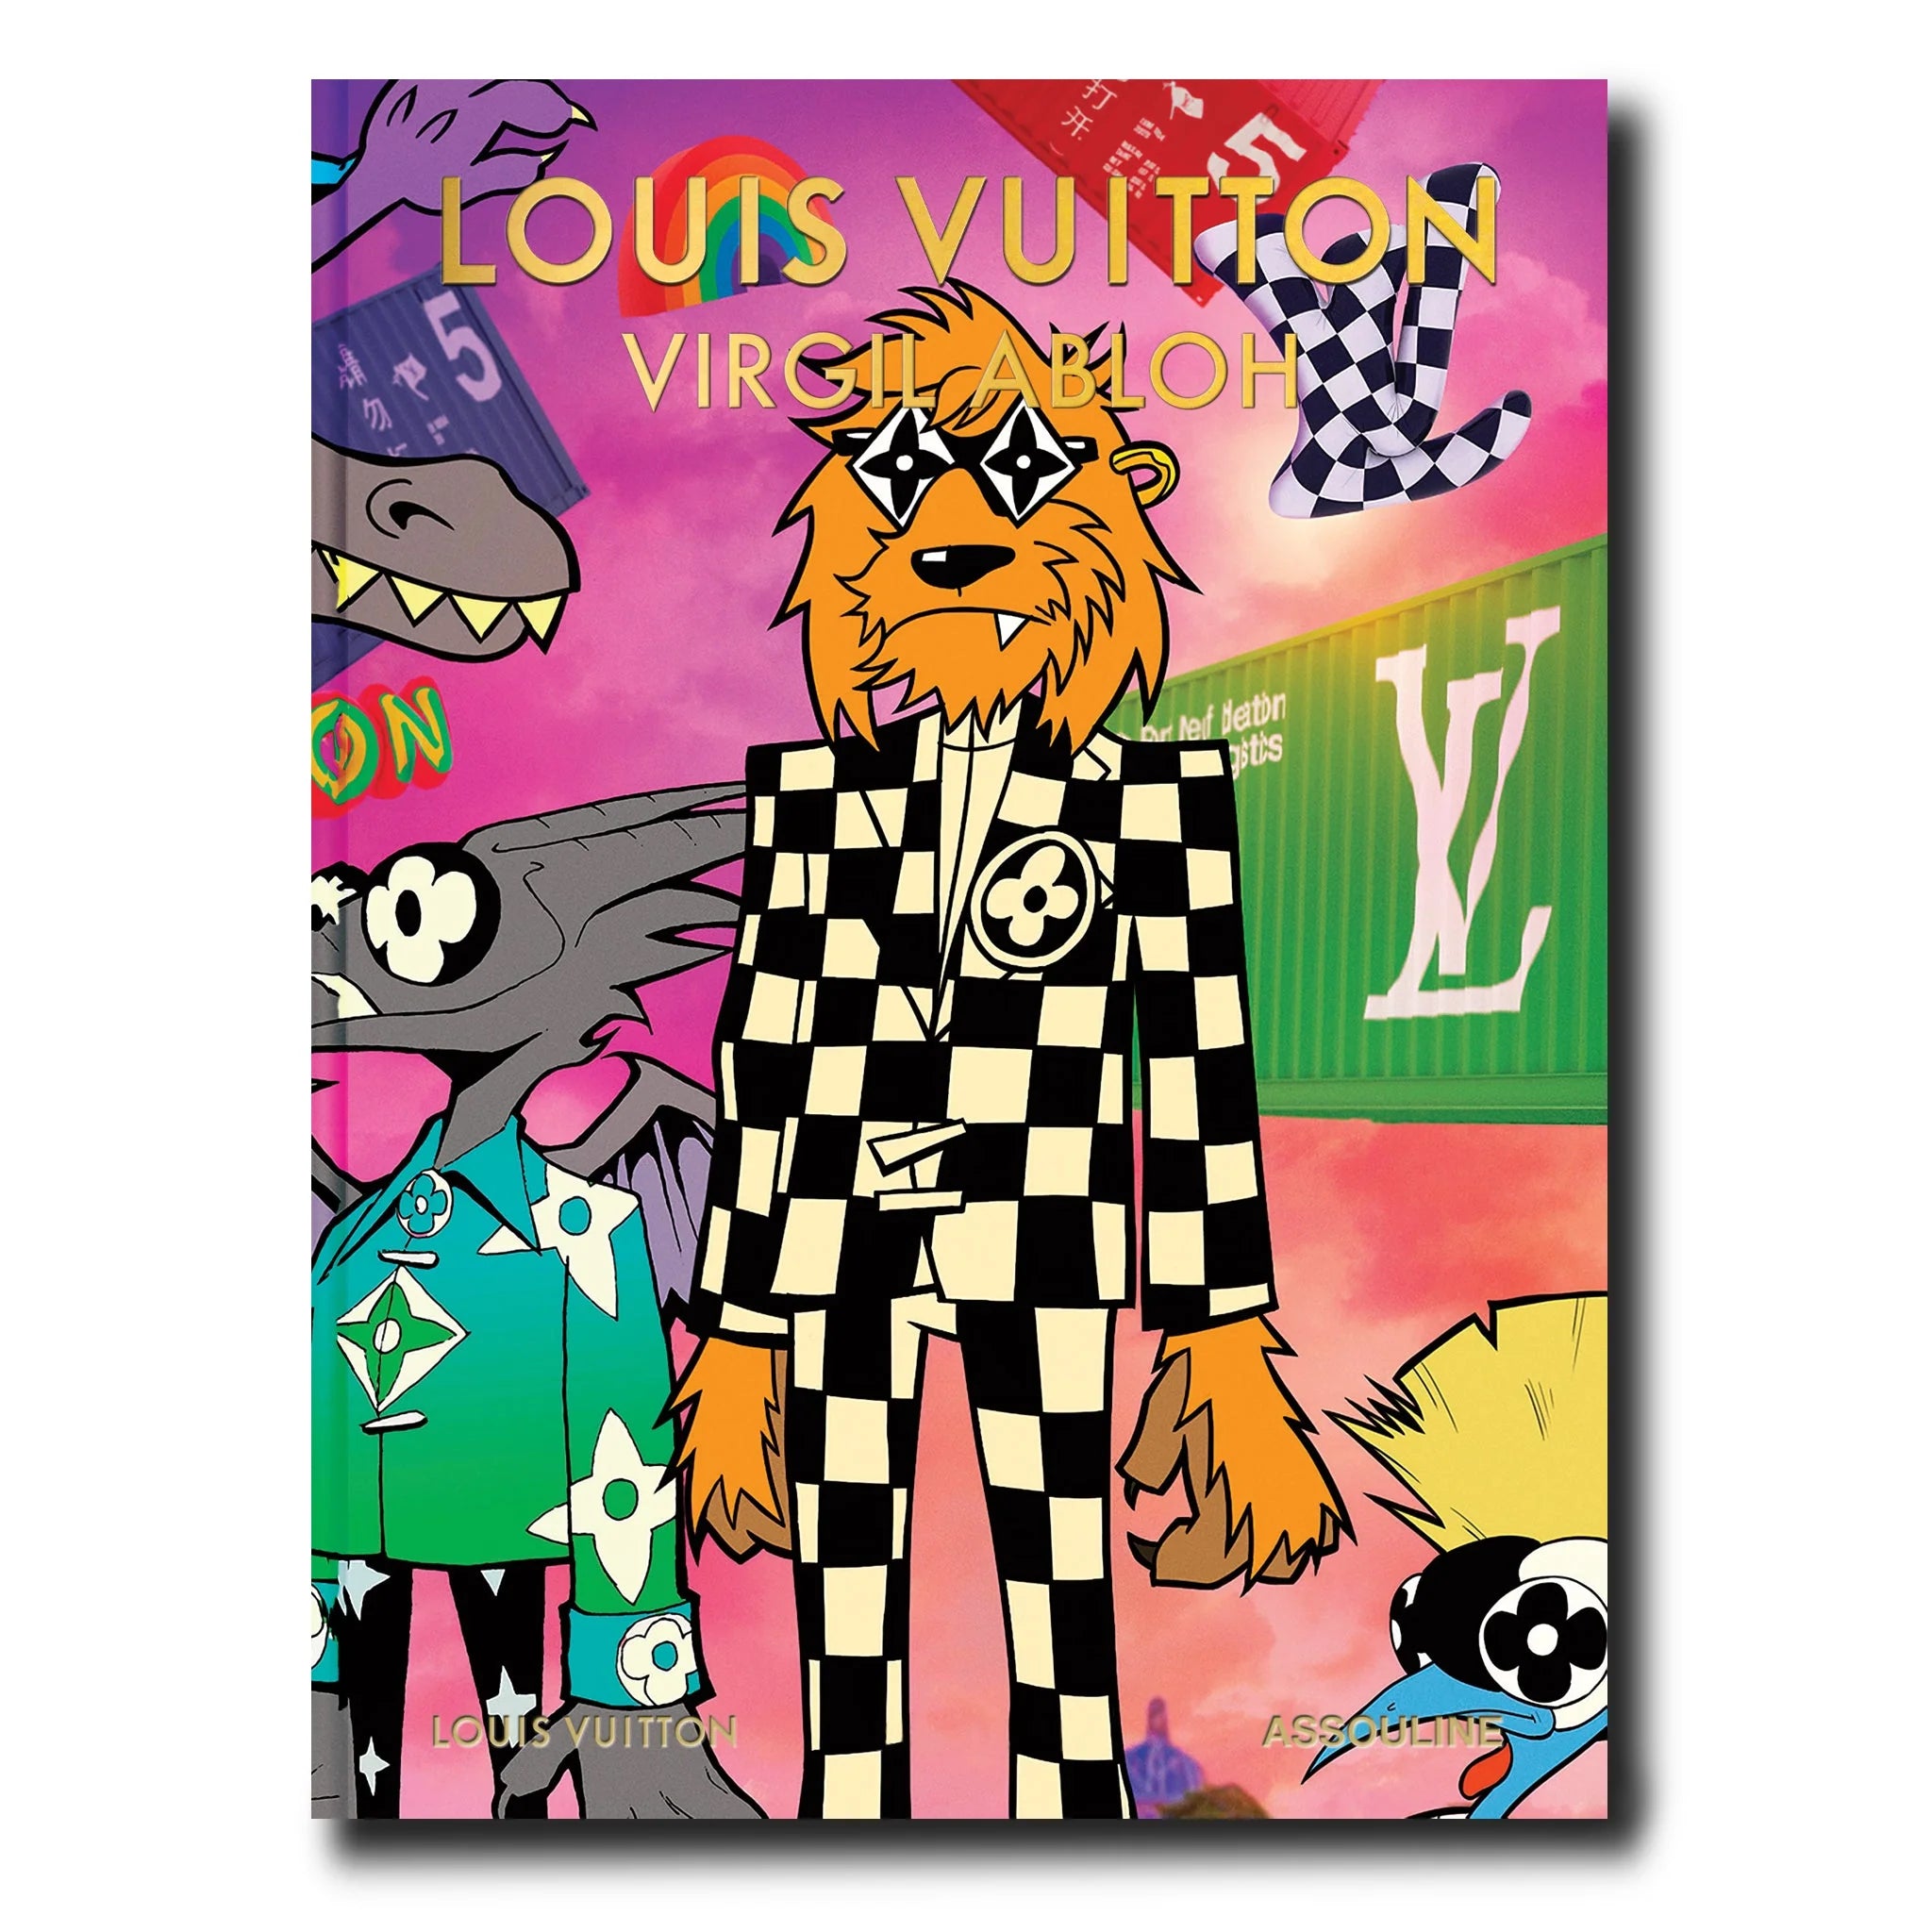 LOUIS VUITTON VIRGIL ABLOH (CARTOON COVER), libro de moda de Assouline